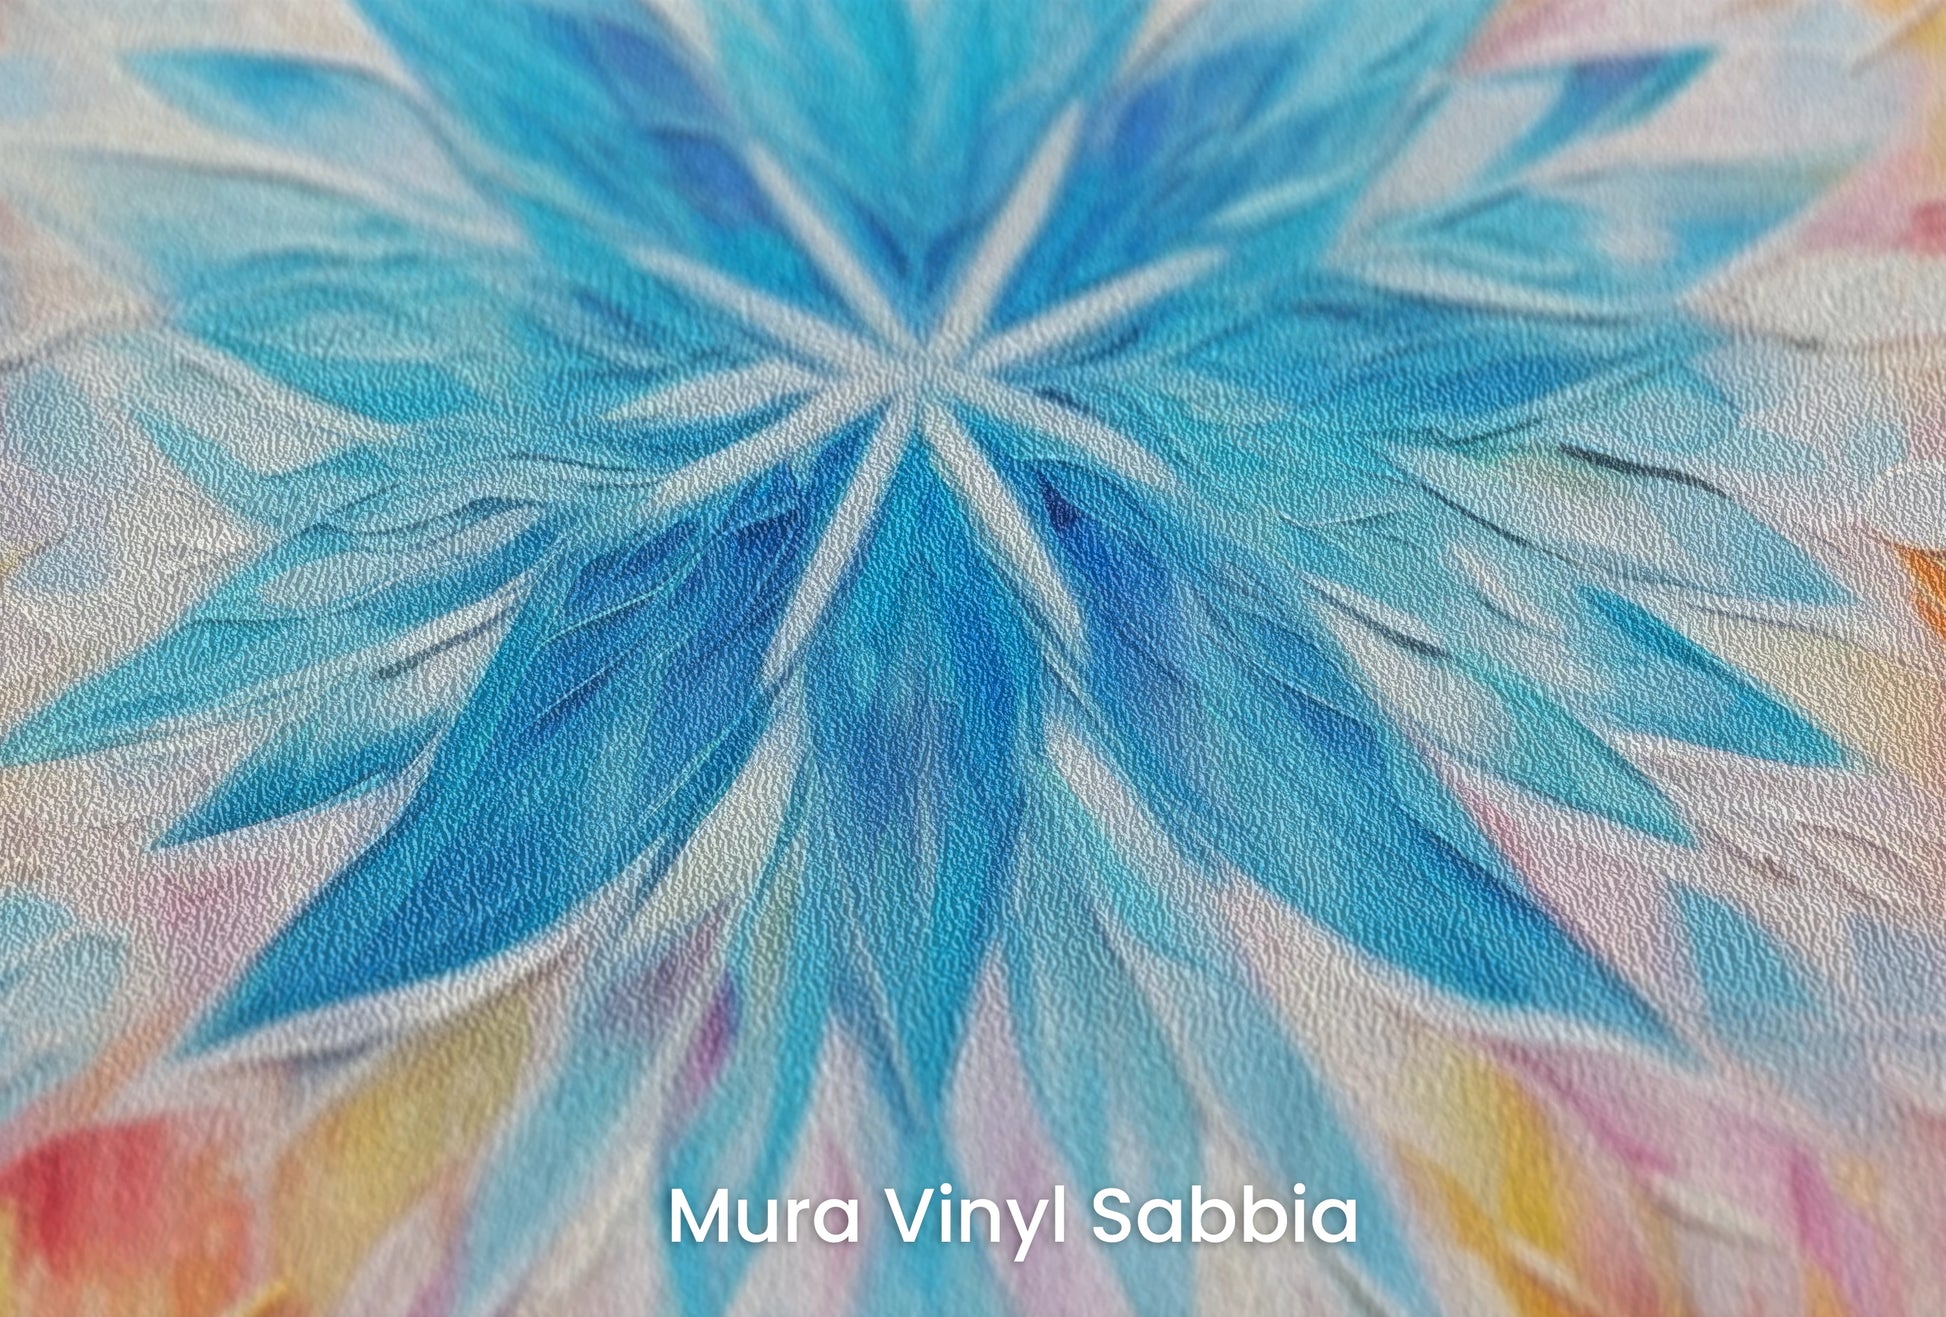 Zbliżenie na artystyczną fototapetę o nazwie Fire and Ice na podłożu Mura Vinyl Sabbia struktura grubego ziarna piasku.